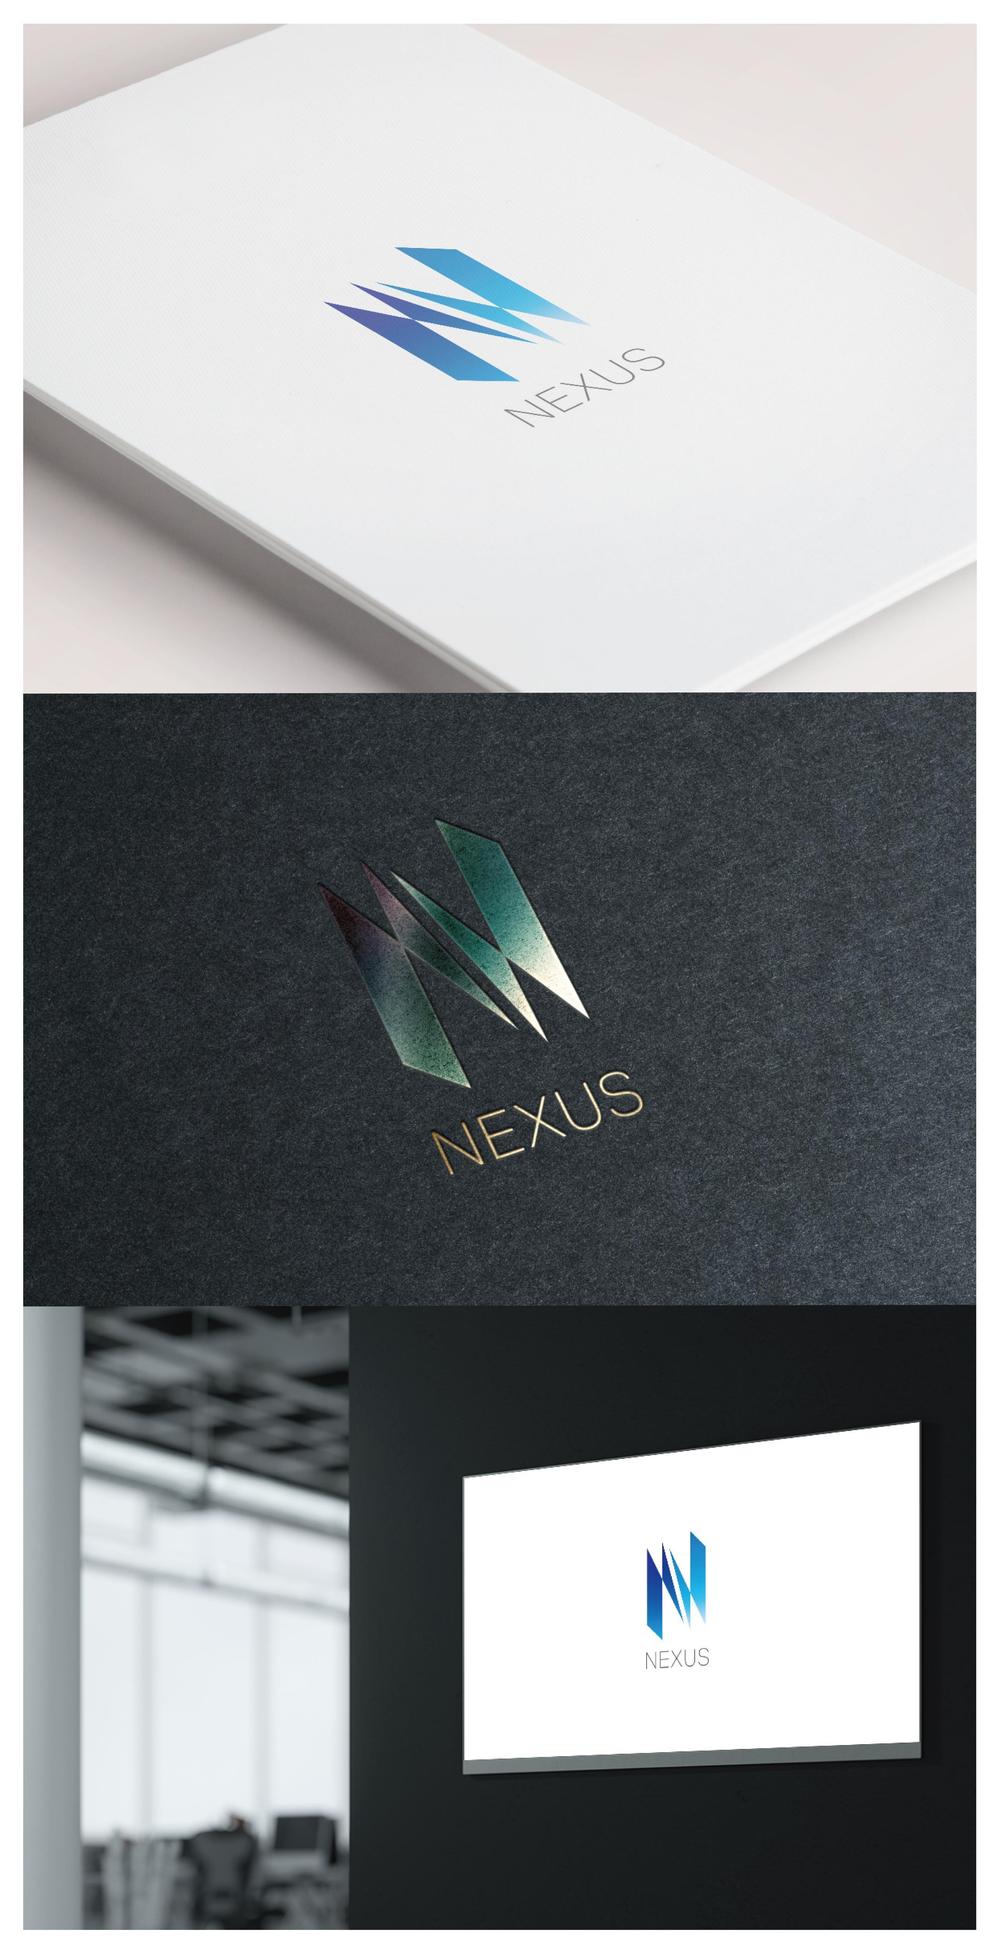 NEXUS_logo01_01.jpg